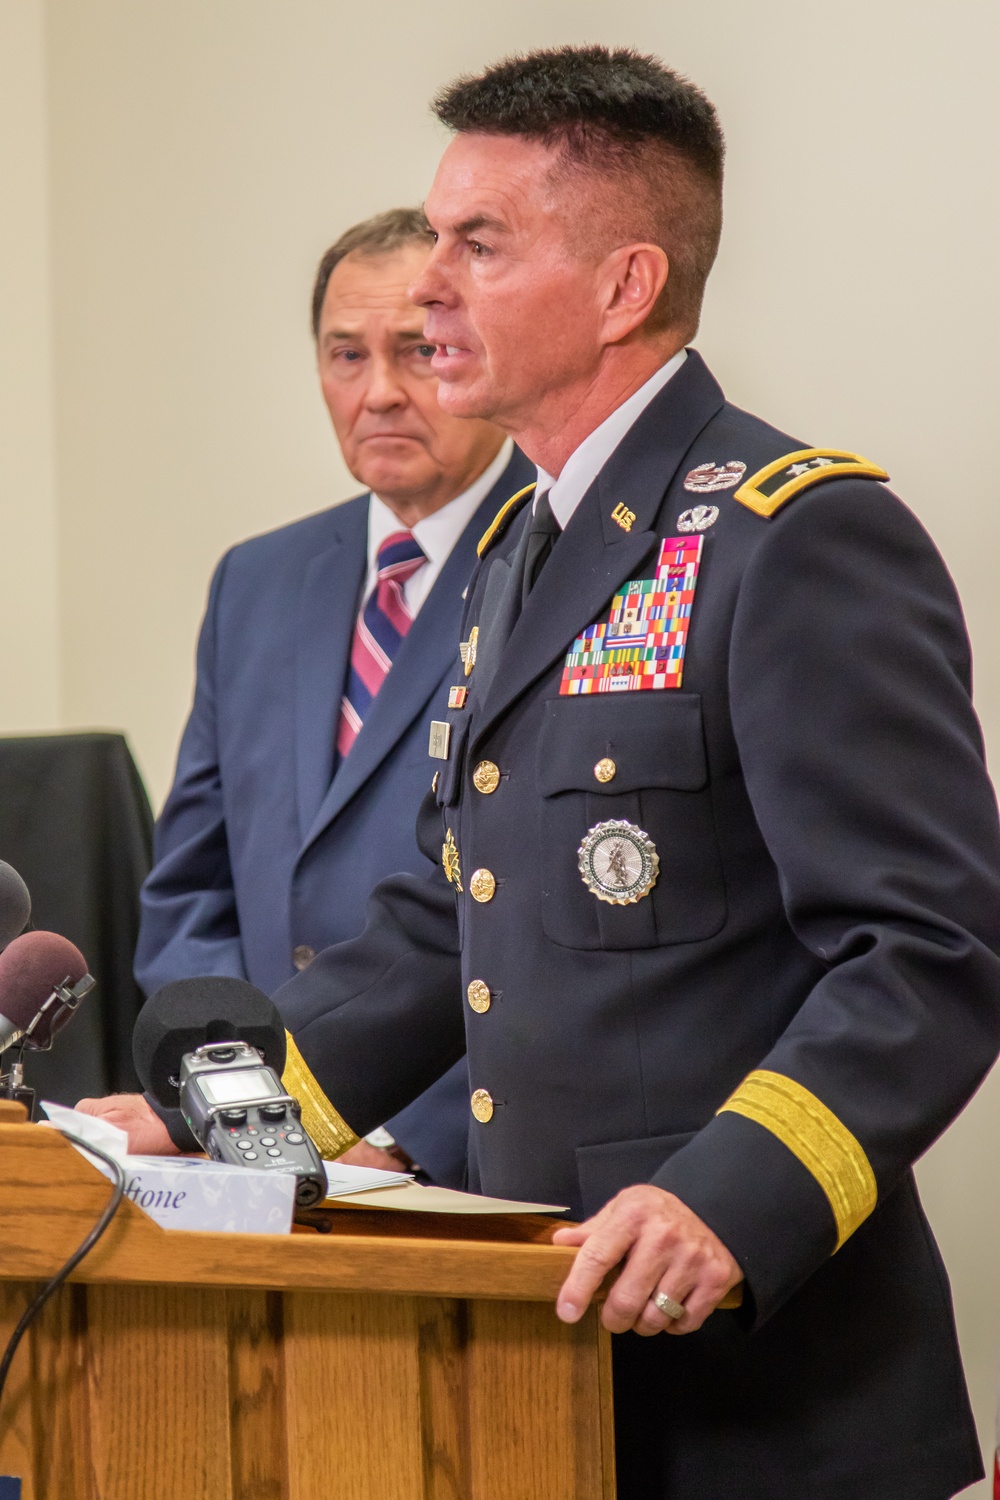 Utah leadership announces Soldier killed in Afghanistan